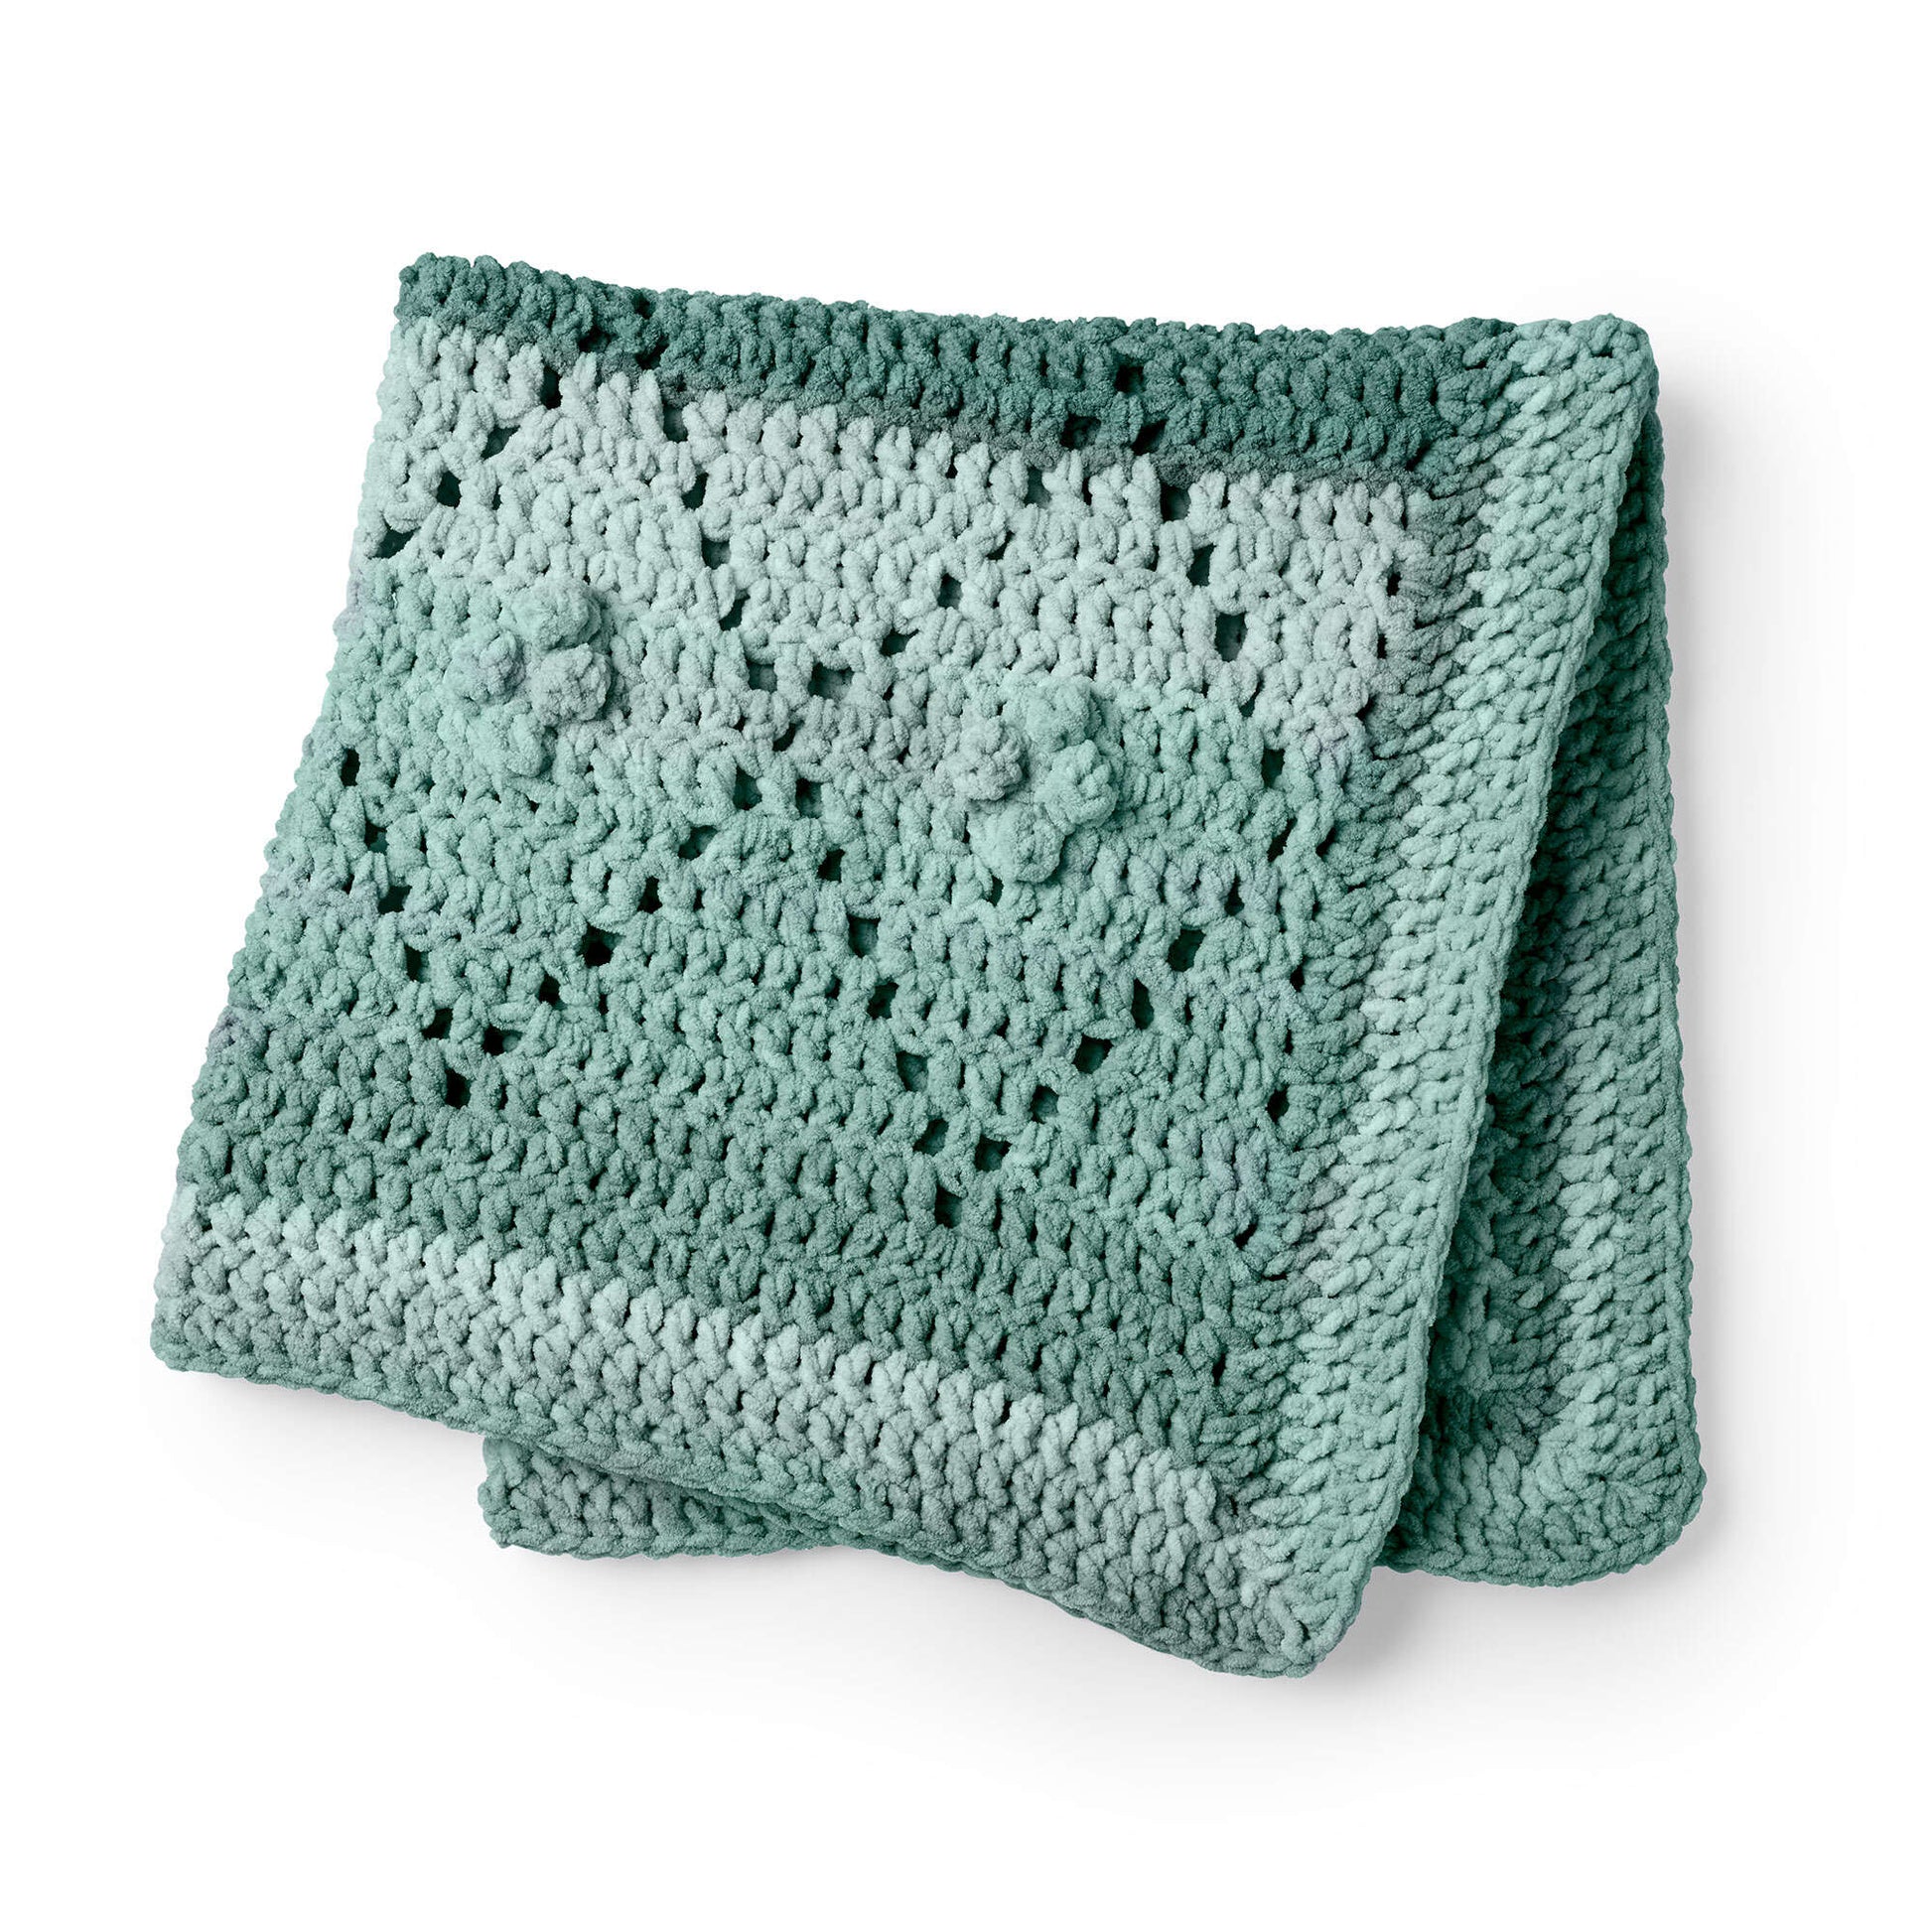 Free Bernat Diamond Filet Crochet Blanket Pattern